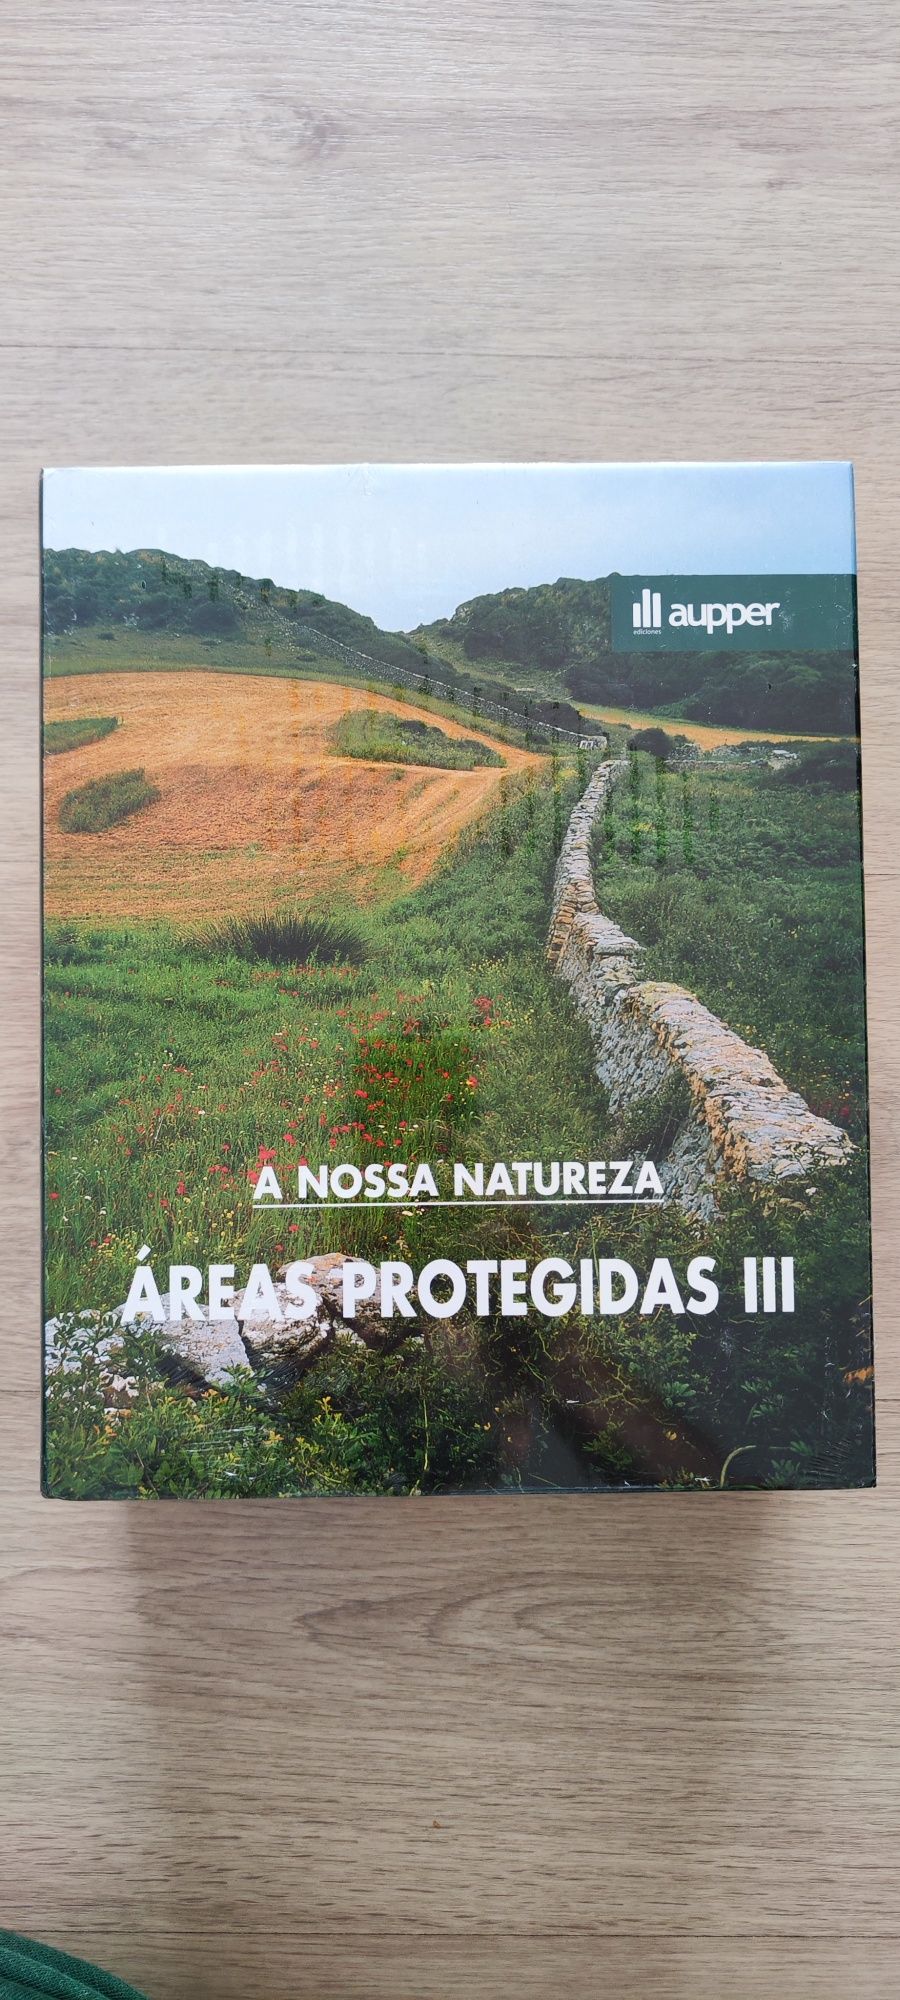 5 livros Coleção A NOSSA NATUREZA - Editora Aupper NOVOS PLASTIFICADOS